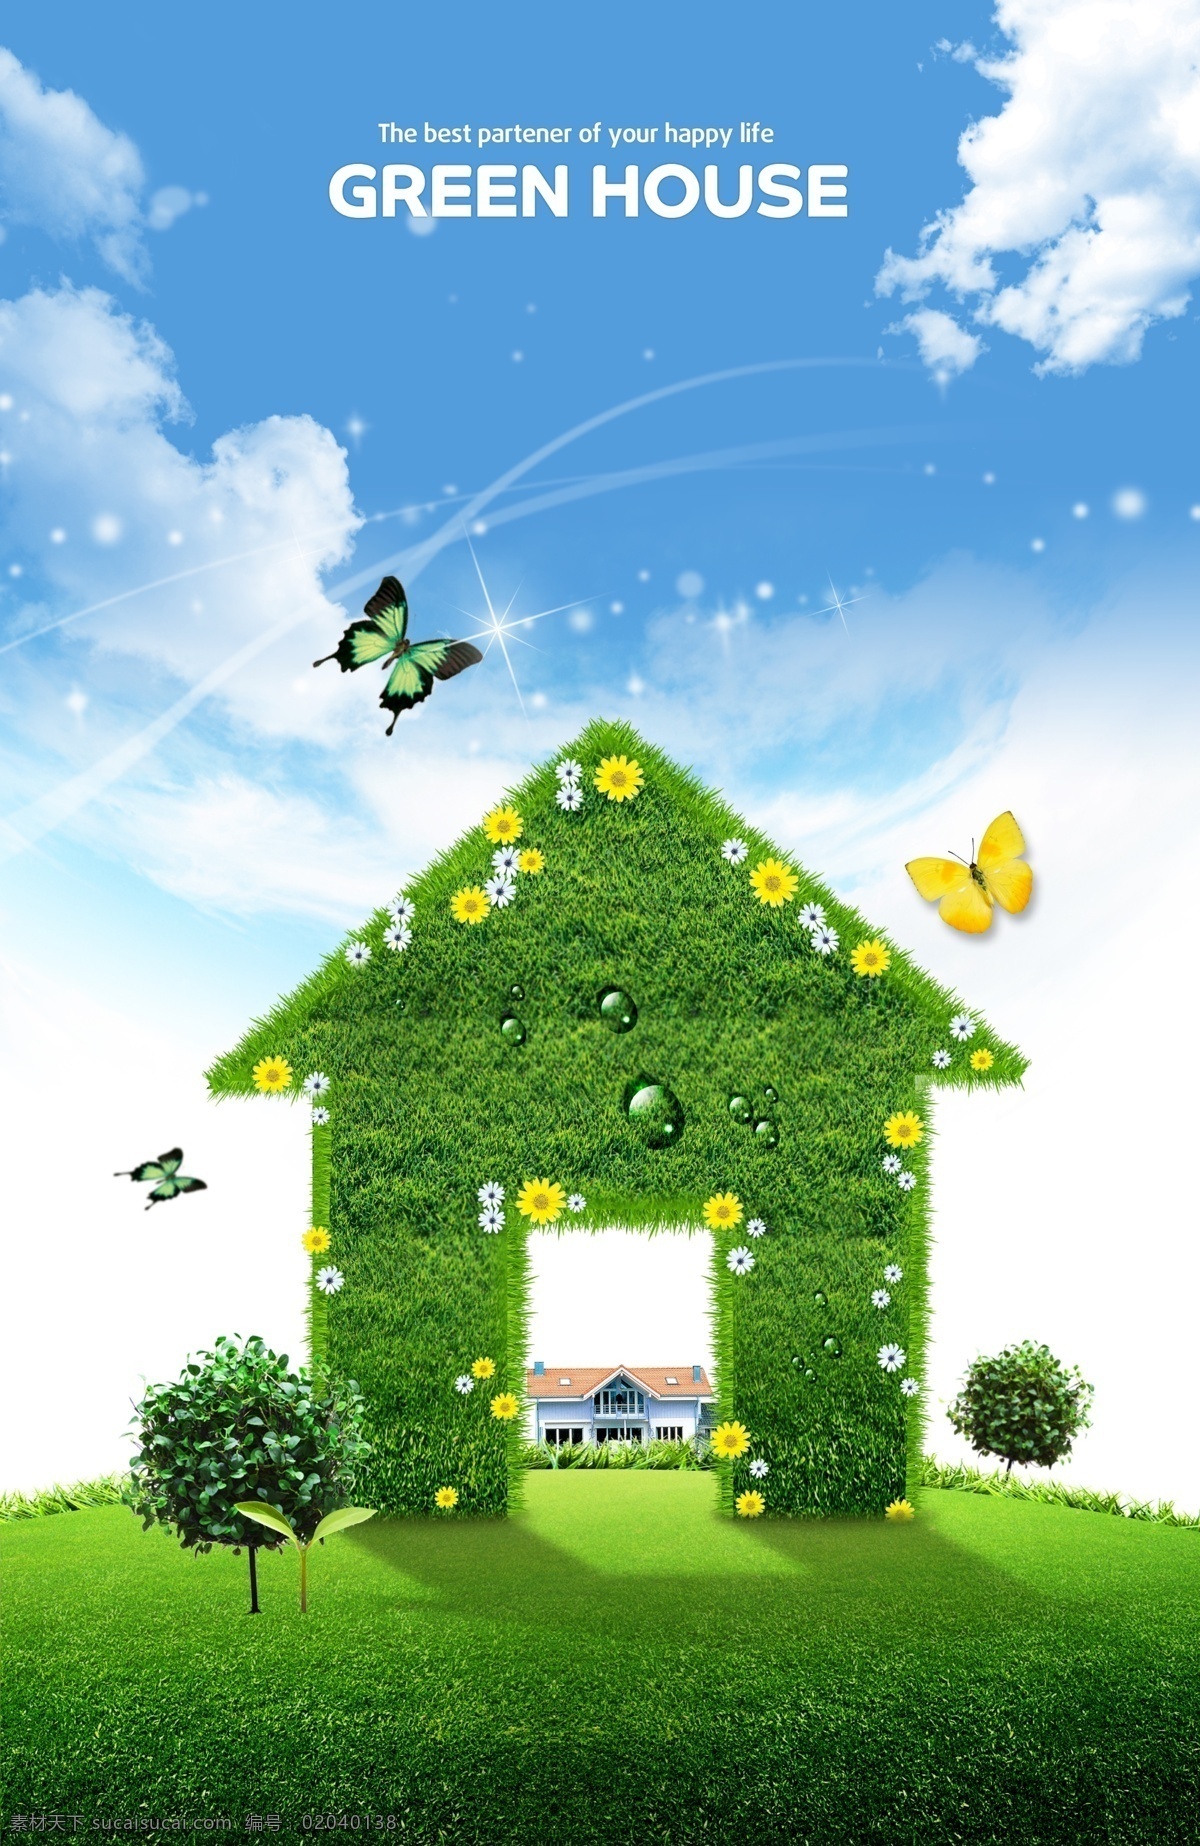 绿色概念 环保 节能 清新 自然 房子 草地 绿色房子 蓝天 白云 蝴蝶 广告设计模板 psd素材 白色